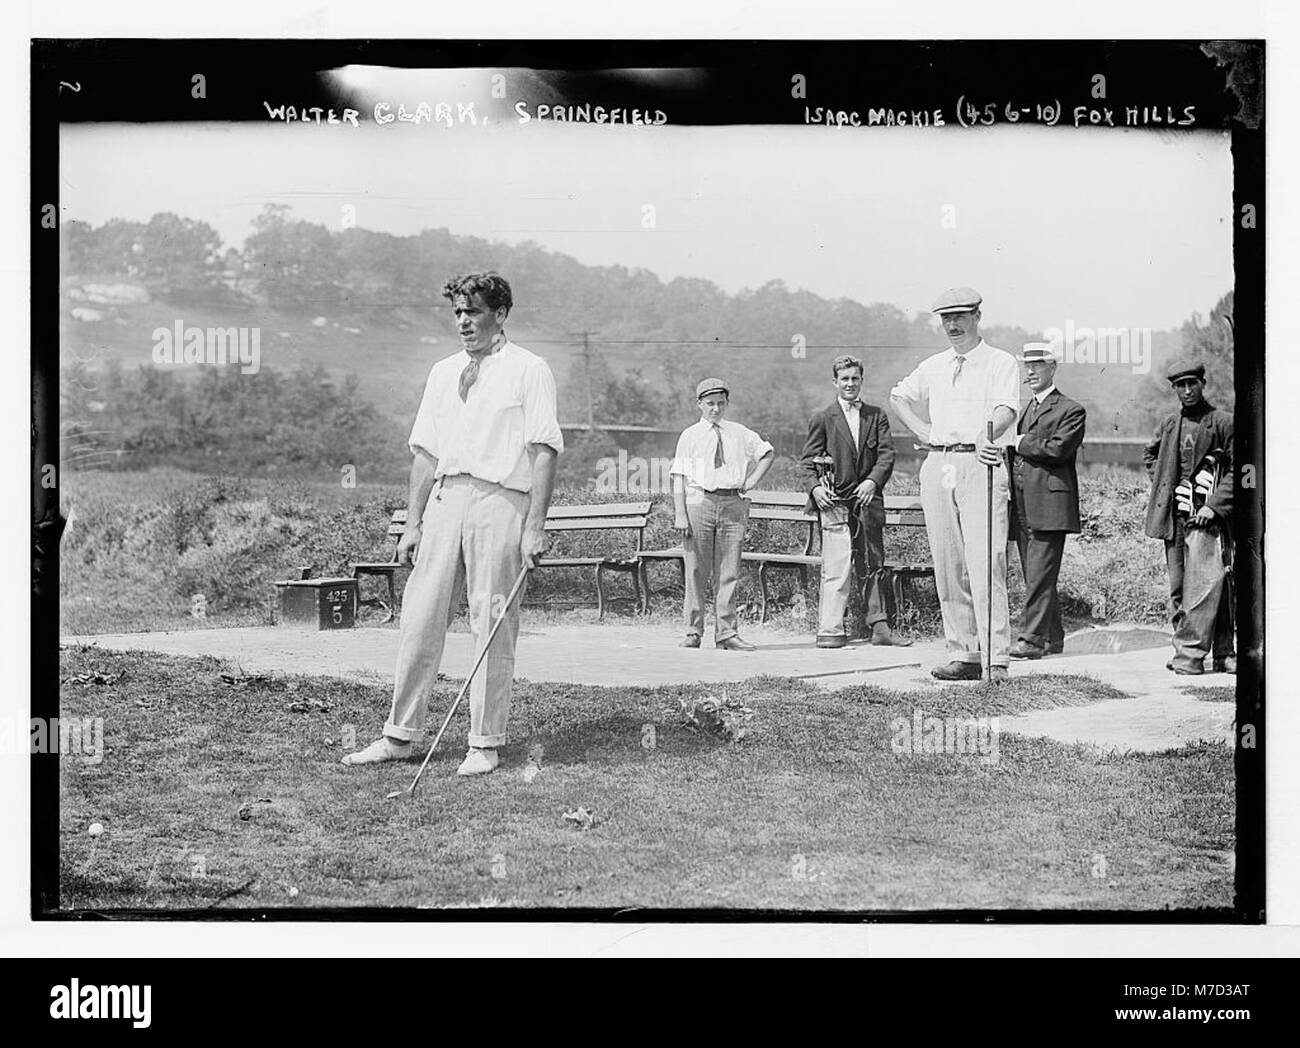 Match de golf) Walter Clark, Springfield et Isaac Mackie, Fox Hills RCAC2014682081 Banque D'Images